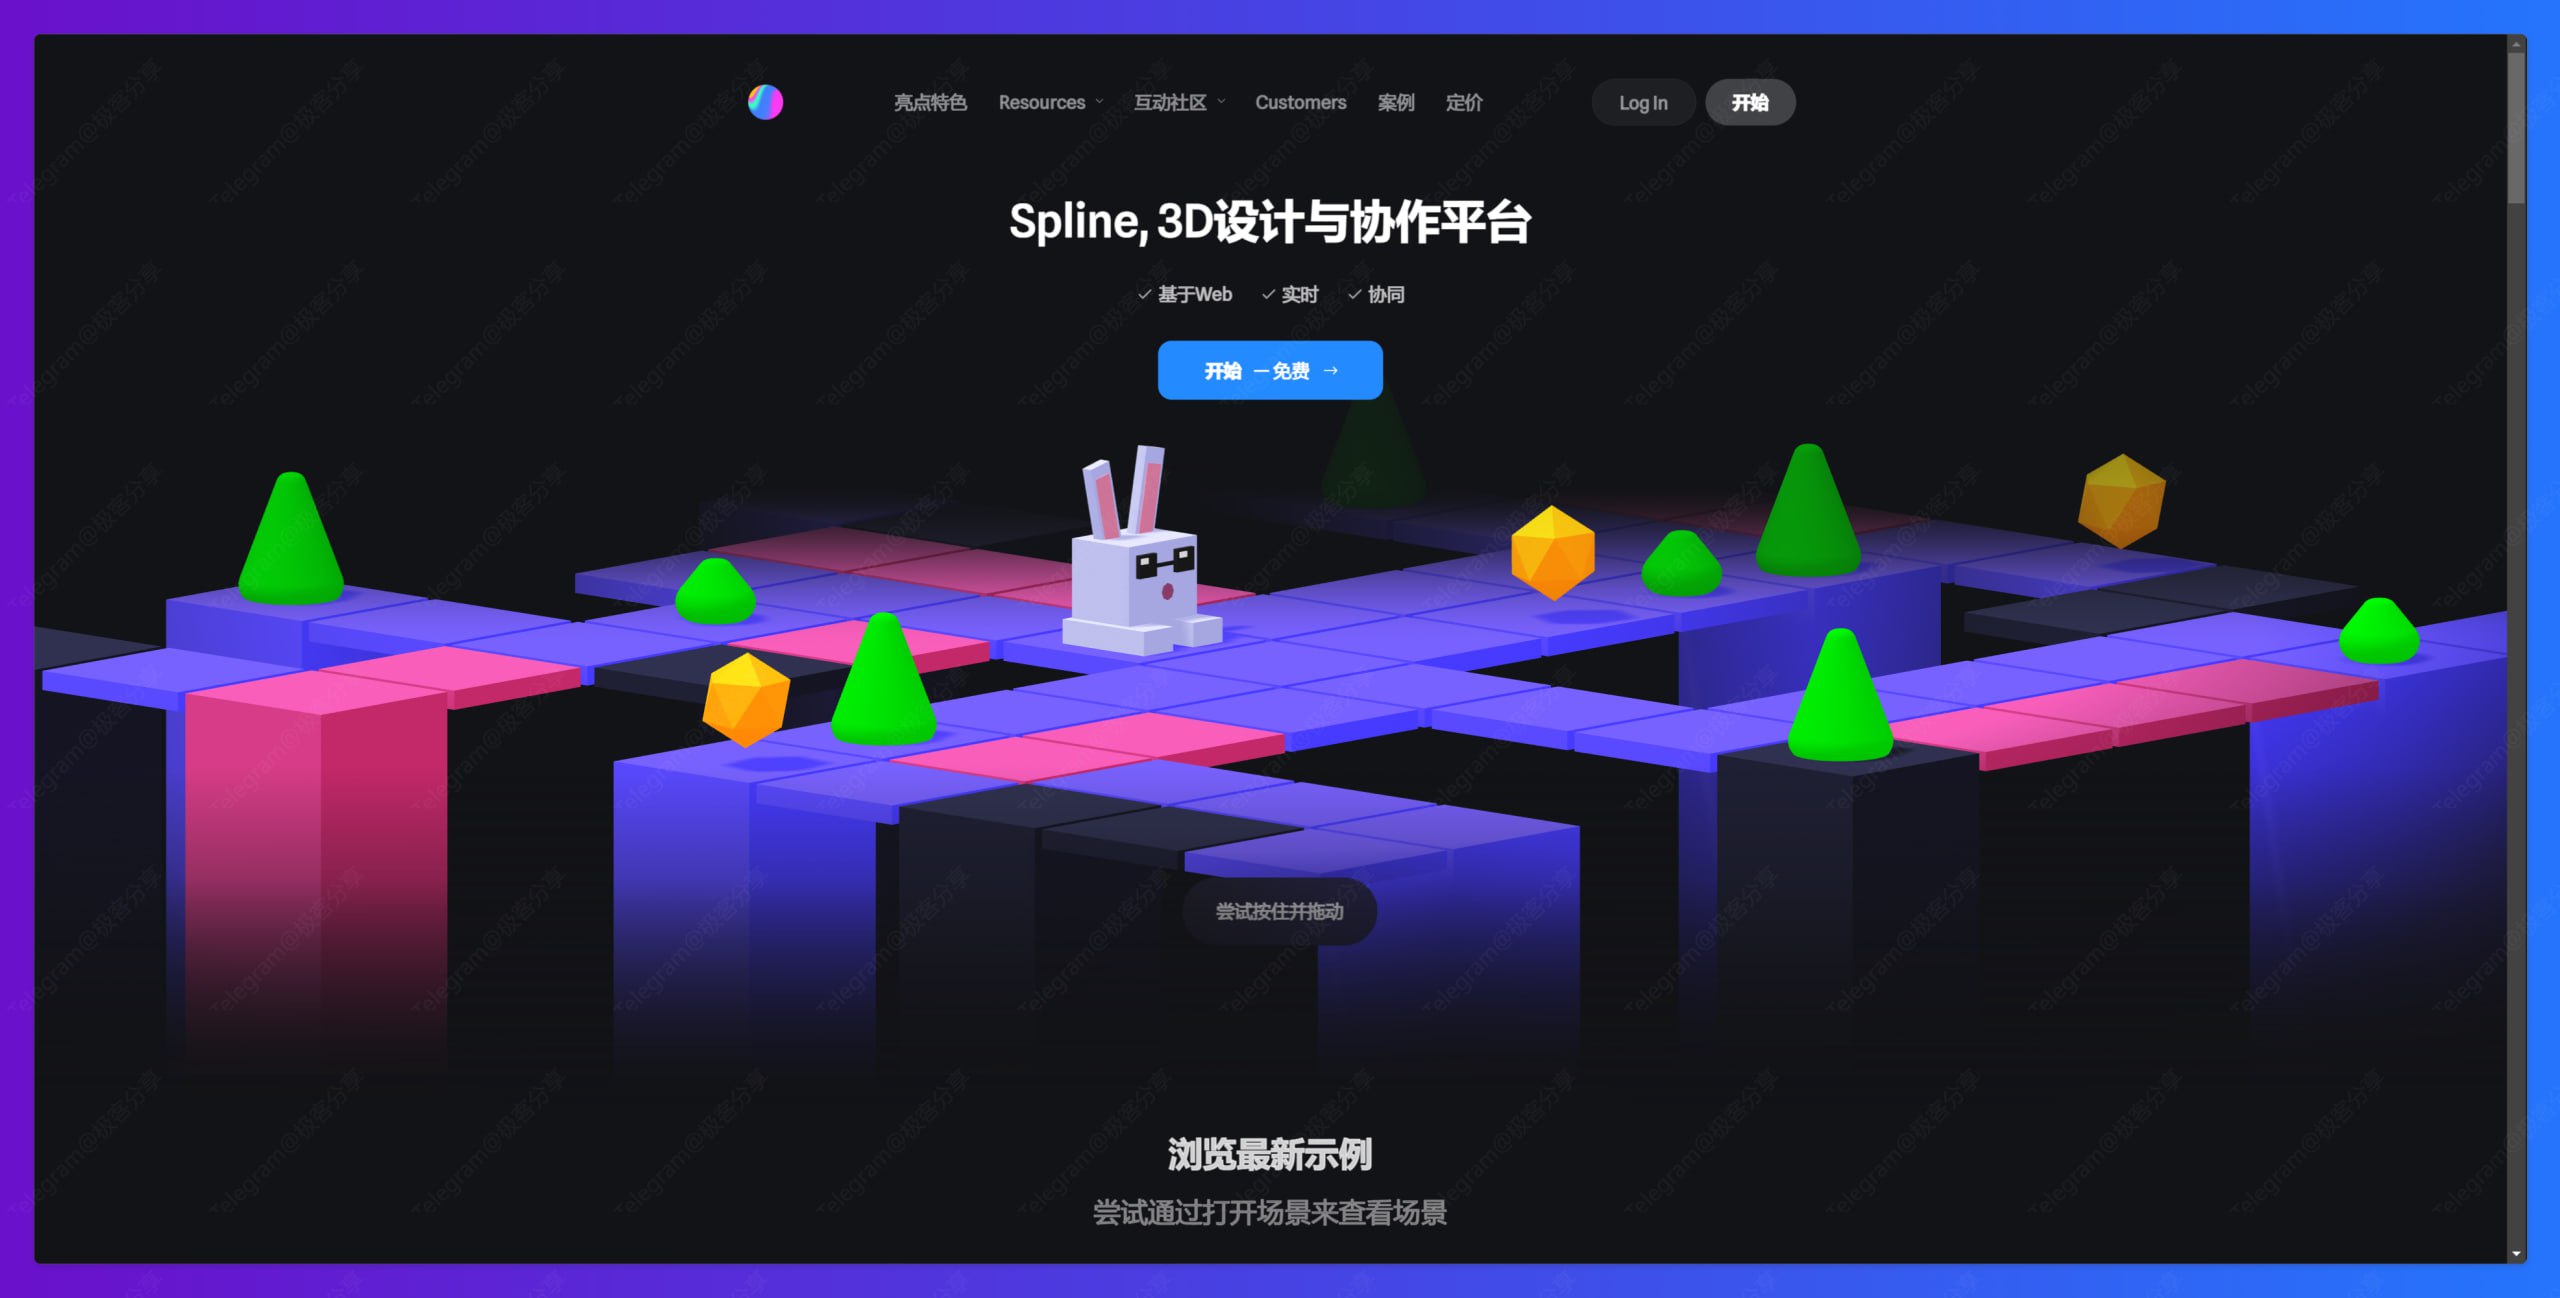 spline：一个友好的3D协作设计工具